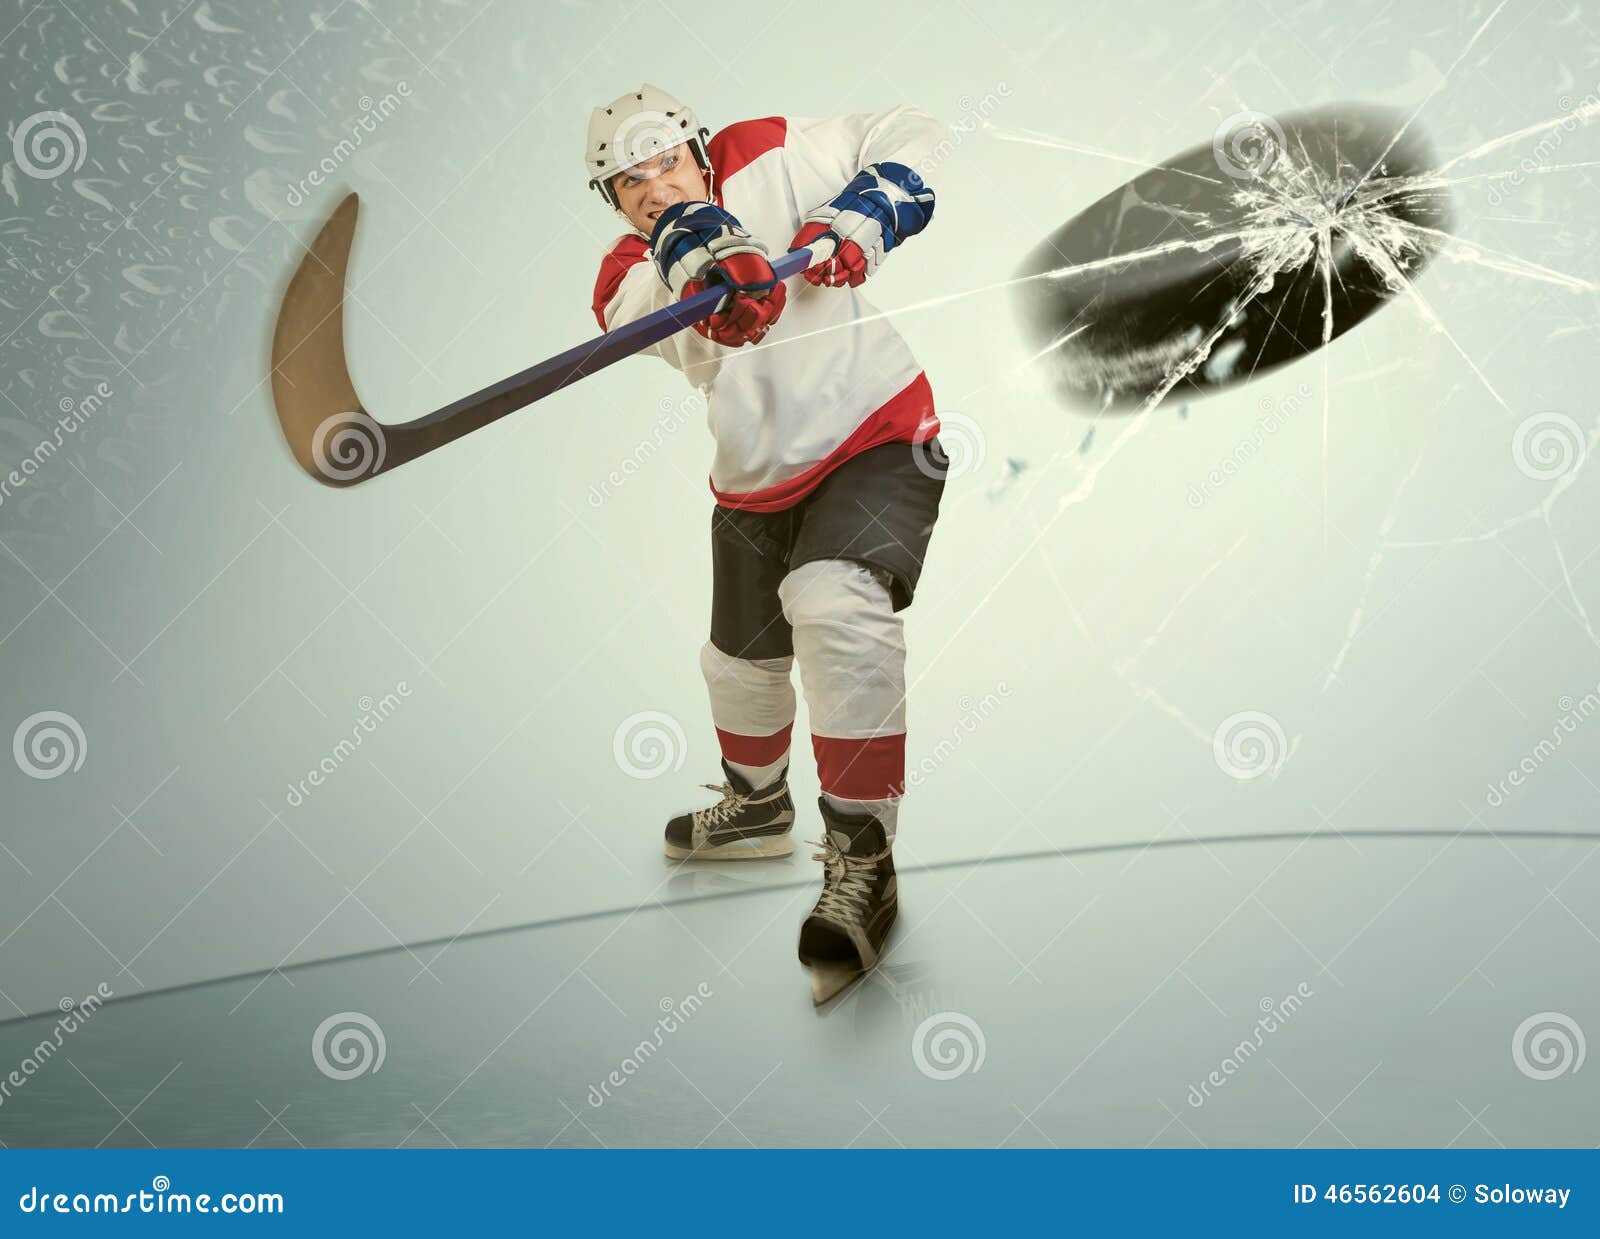 ice hockey puck hit the opponent visor